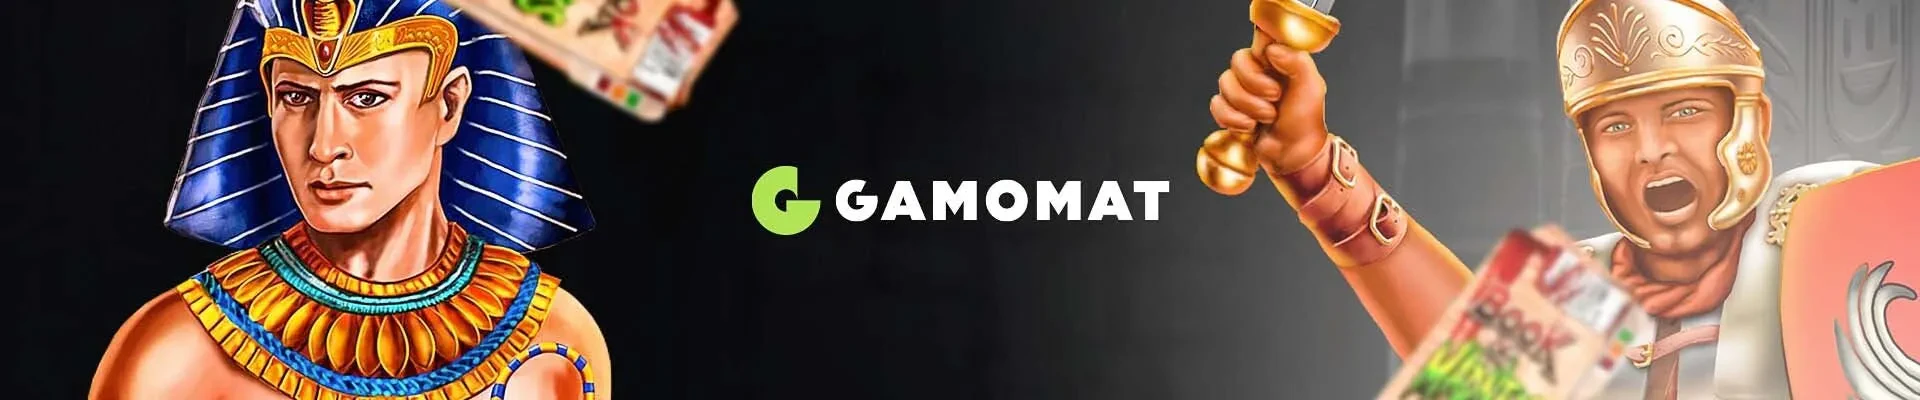 header focus provider gamomat